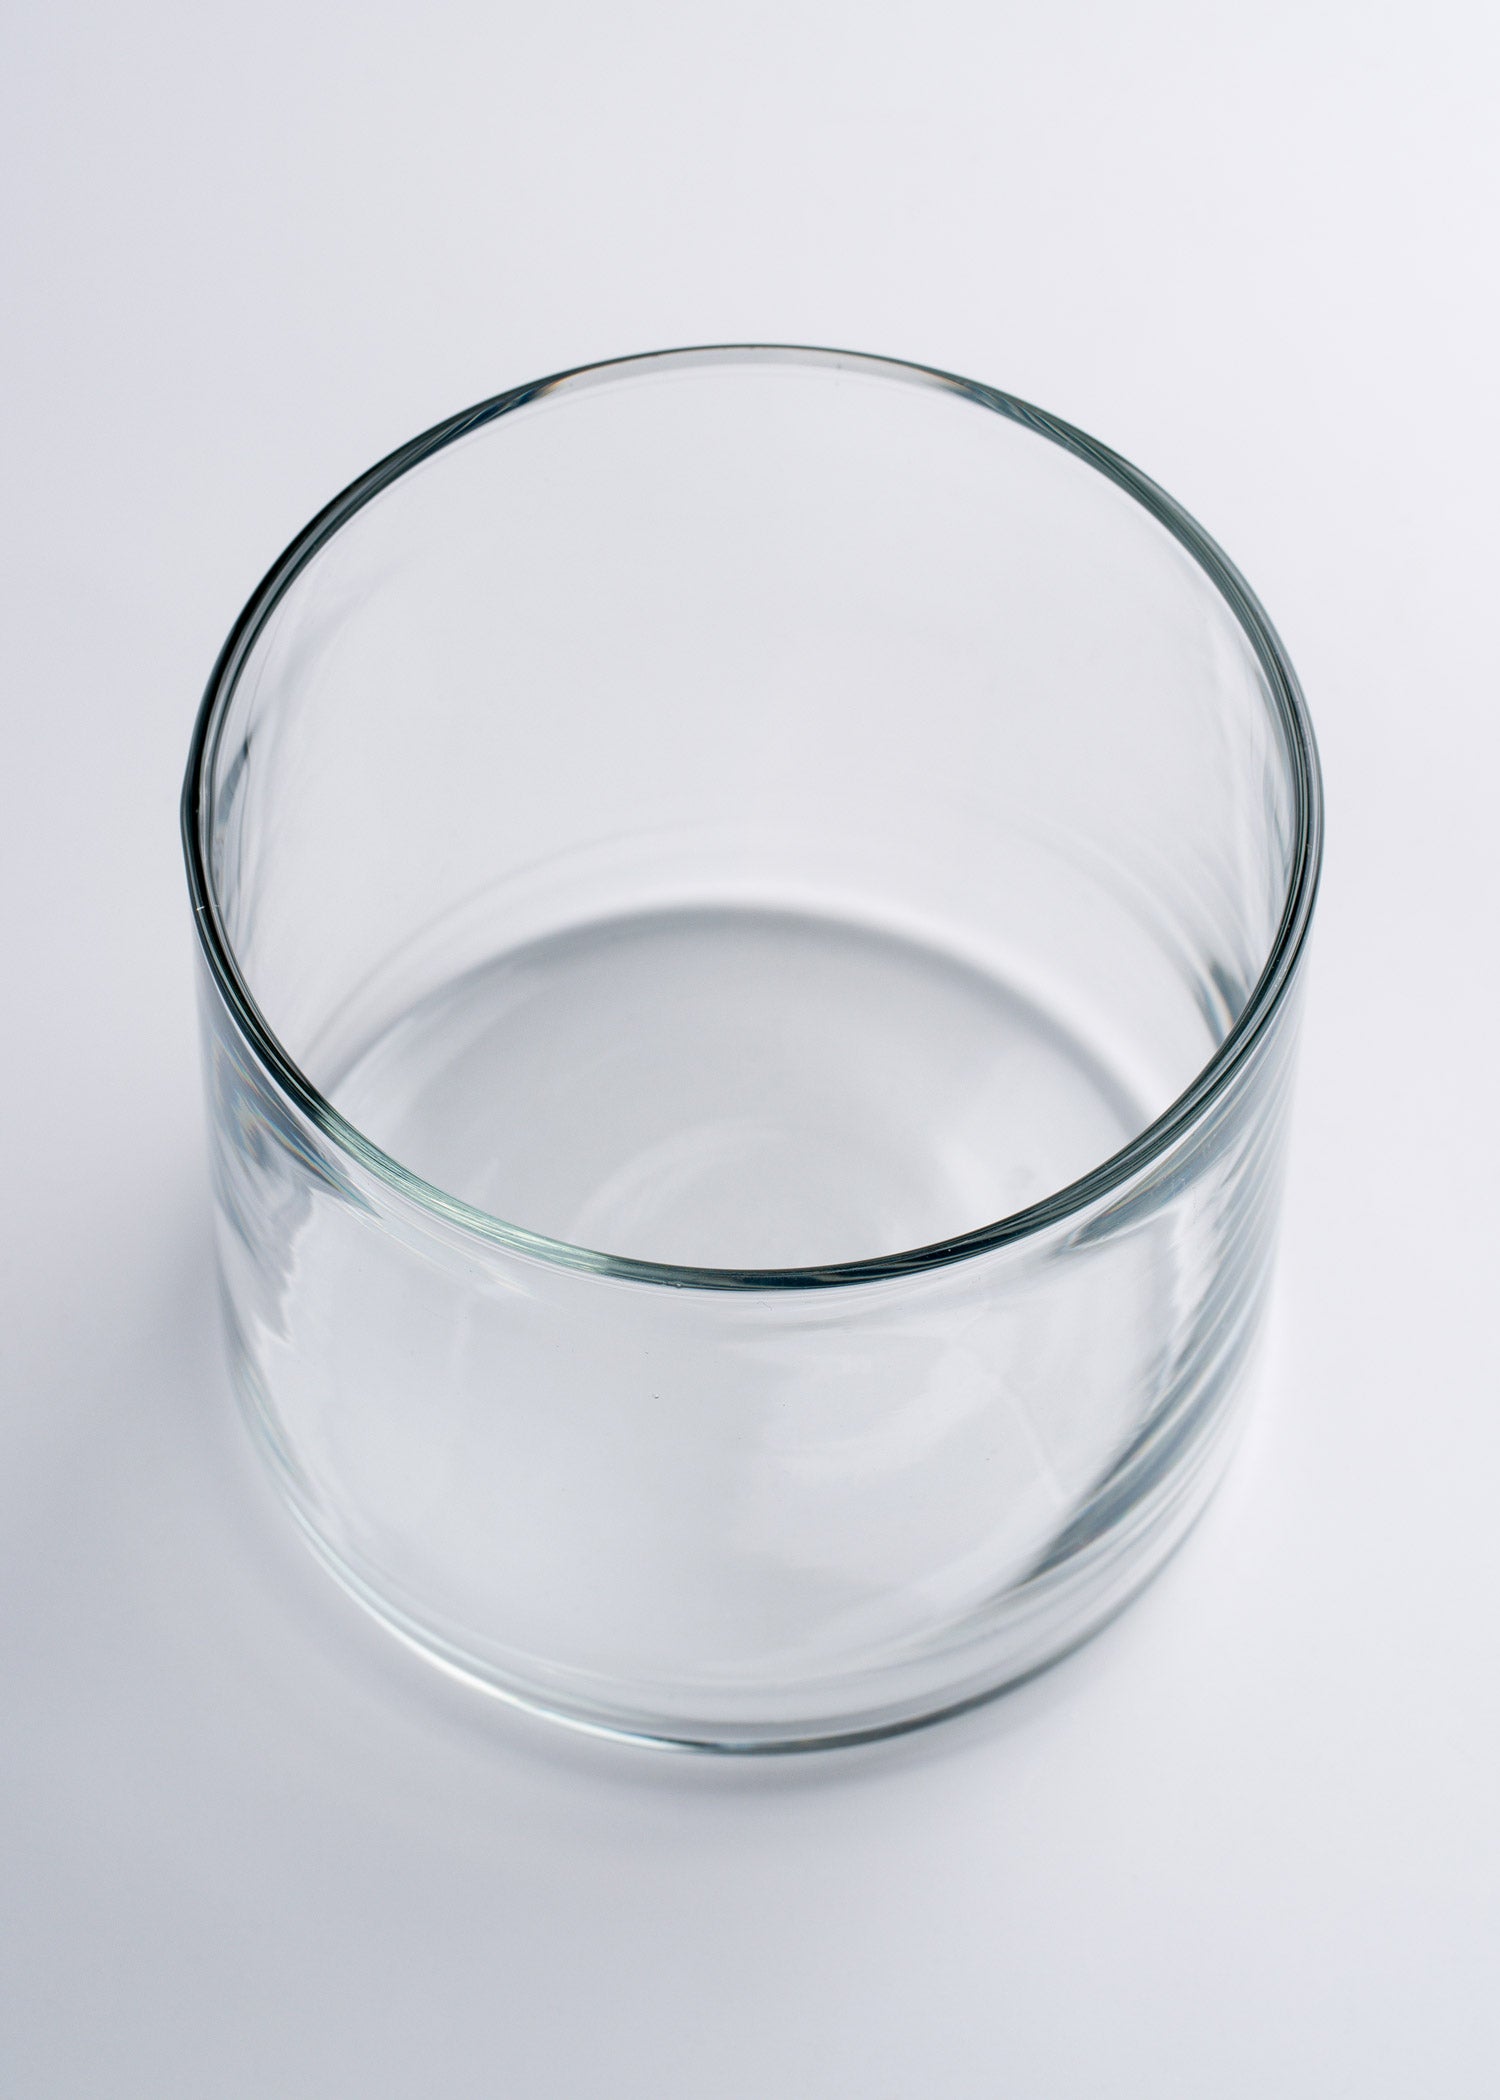 precio vaso vidrio maha 